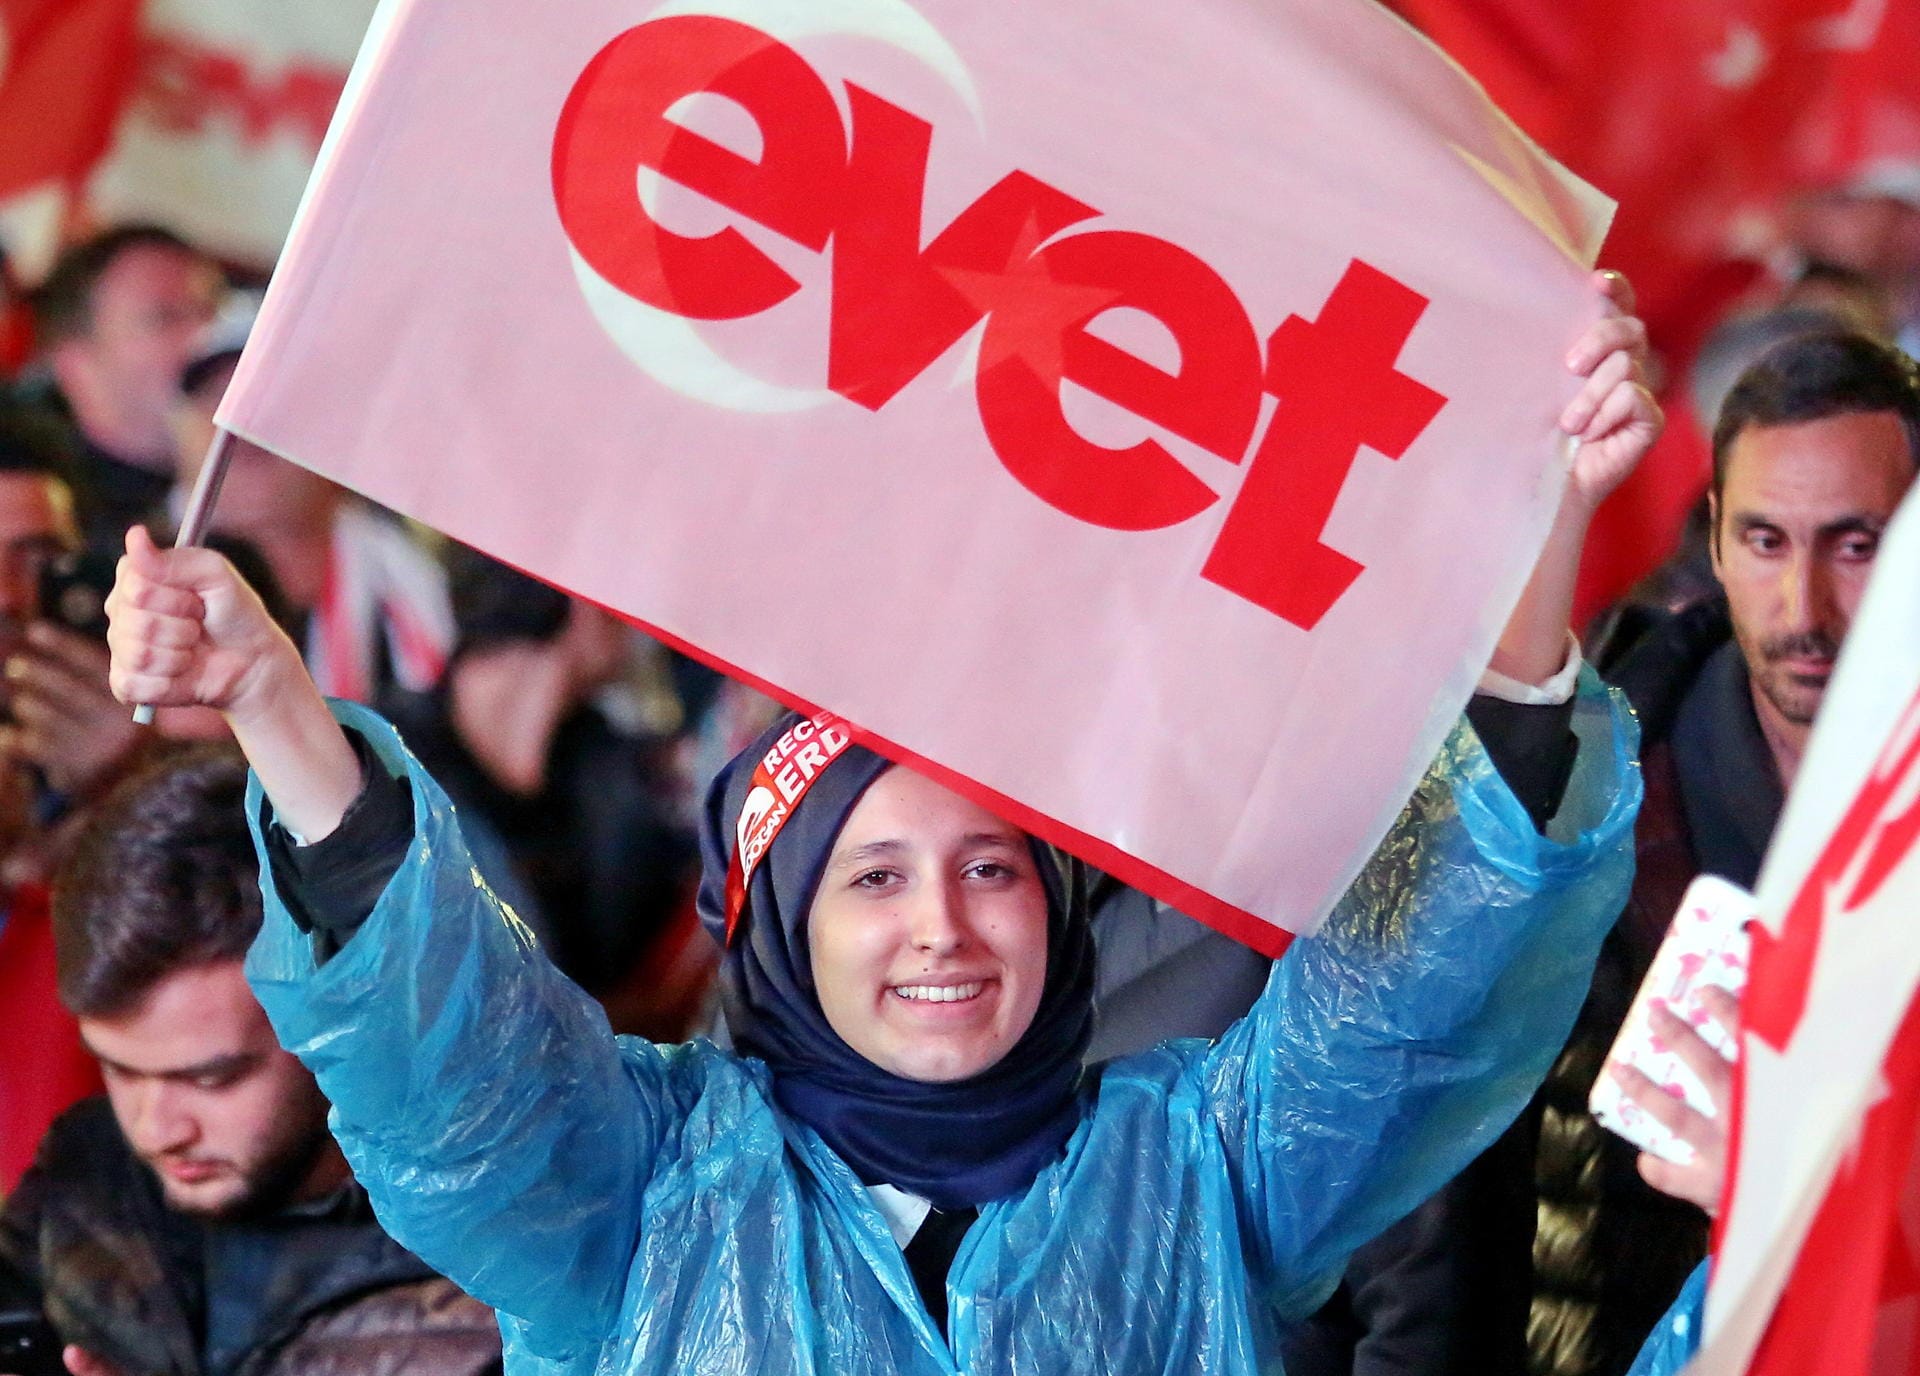 Das Referendum hat die türkische Gesellschaft gespalten und bis heute tiefe Gräben hinterlassen.